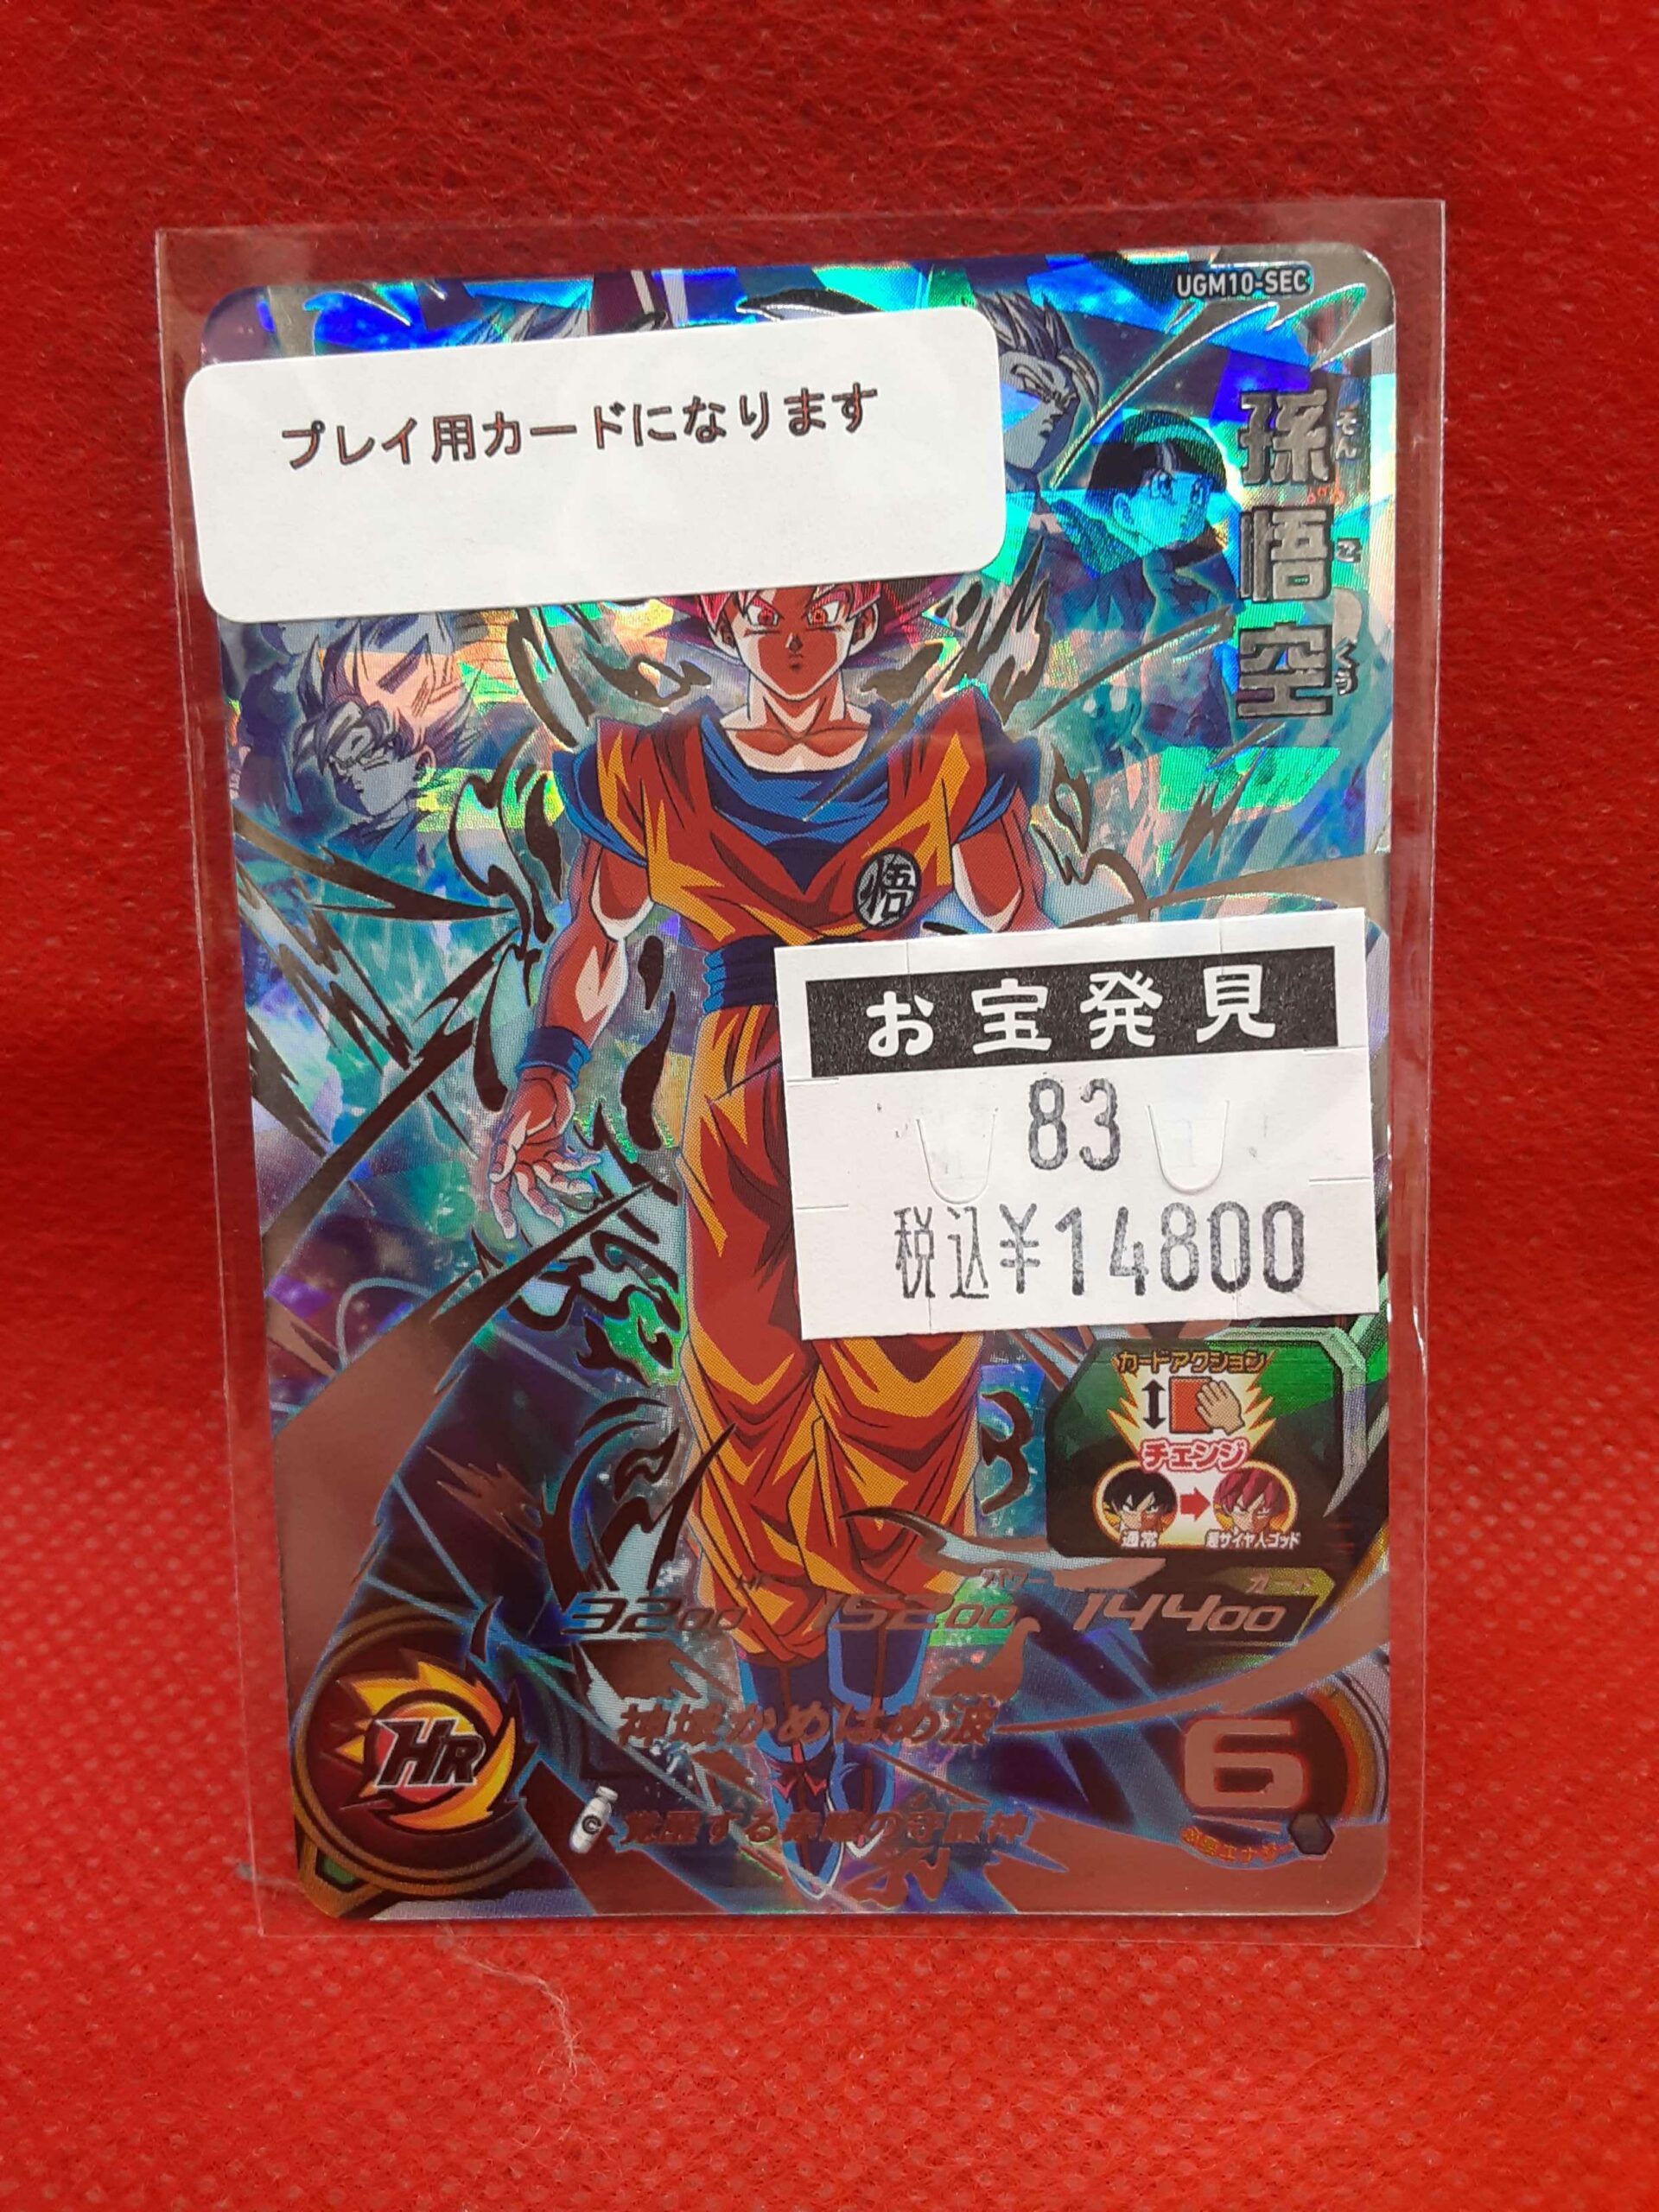 ドラゴンボールカードUGM10-SEC 孫悟空 - ドラゴンボールカード